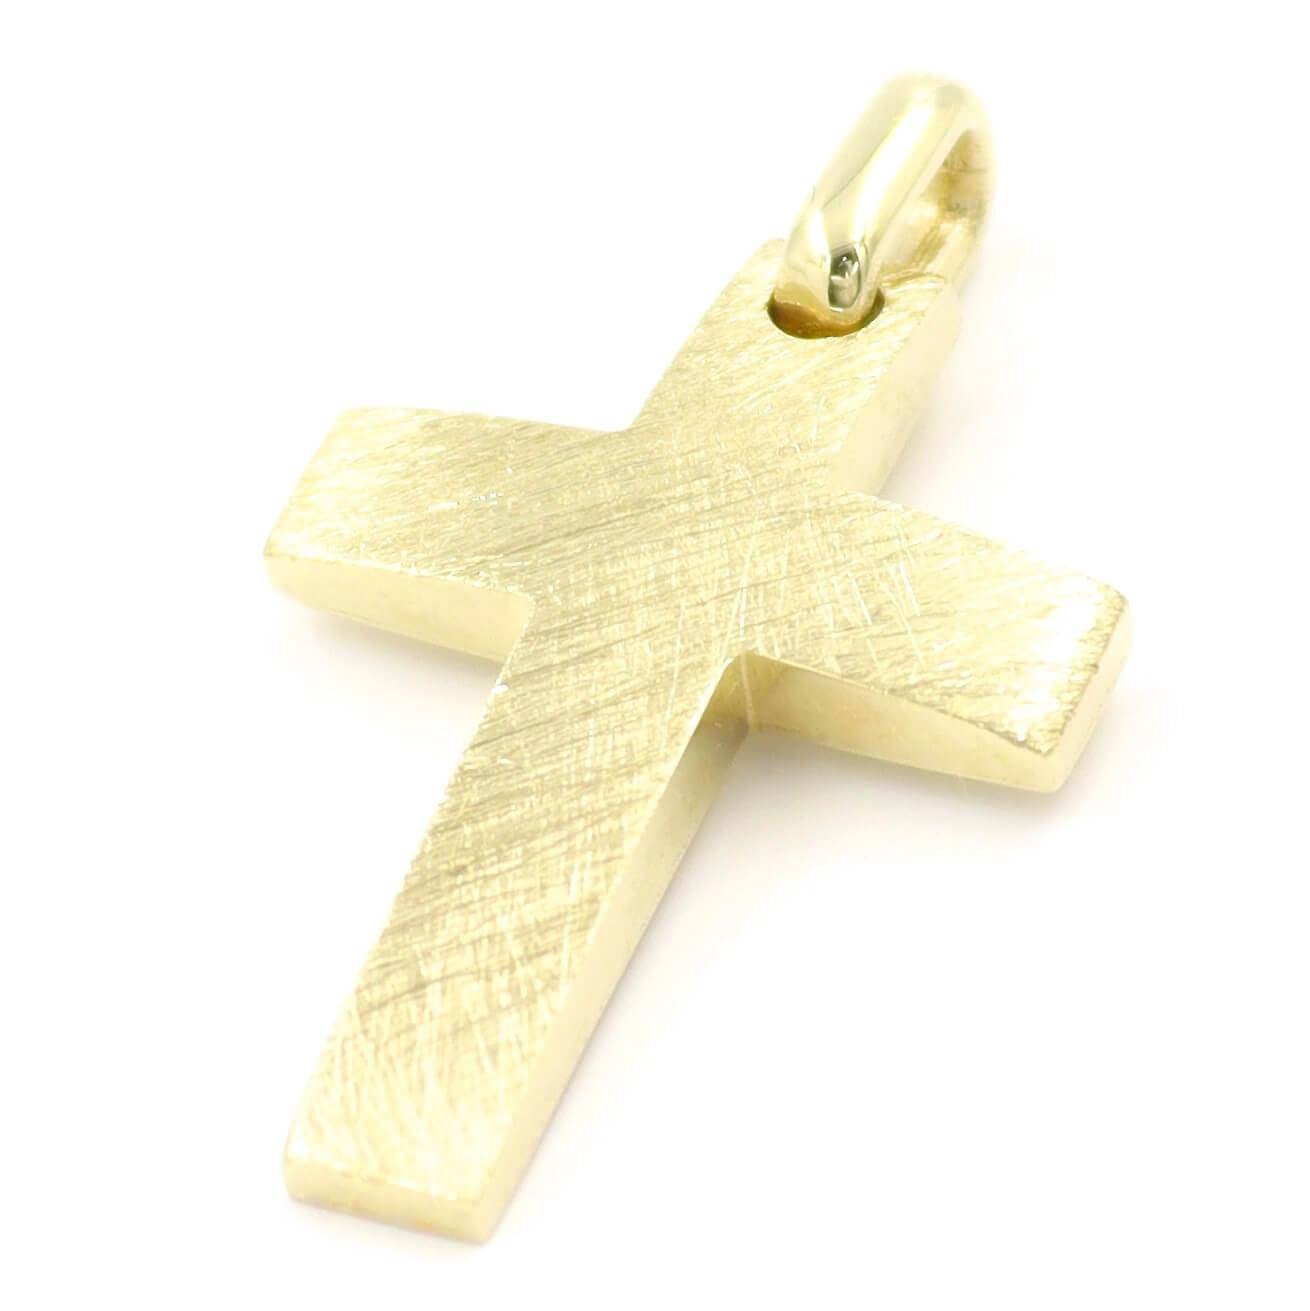 Χρυσός σταυρός με σαγρέ επιφάνεια βαπτιστικός